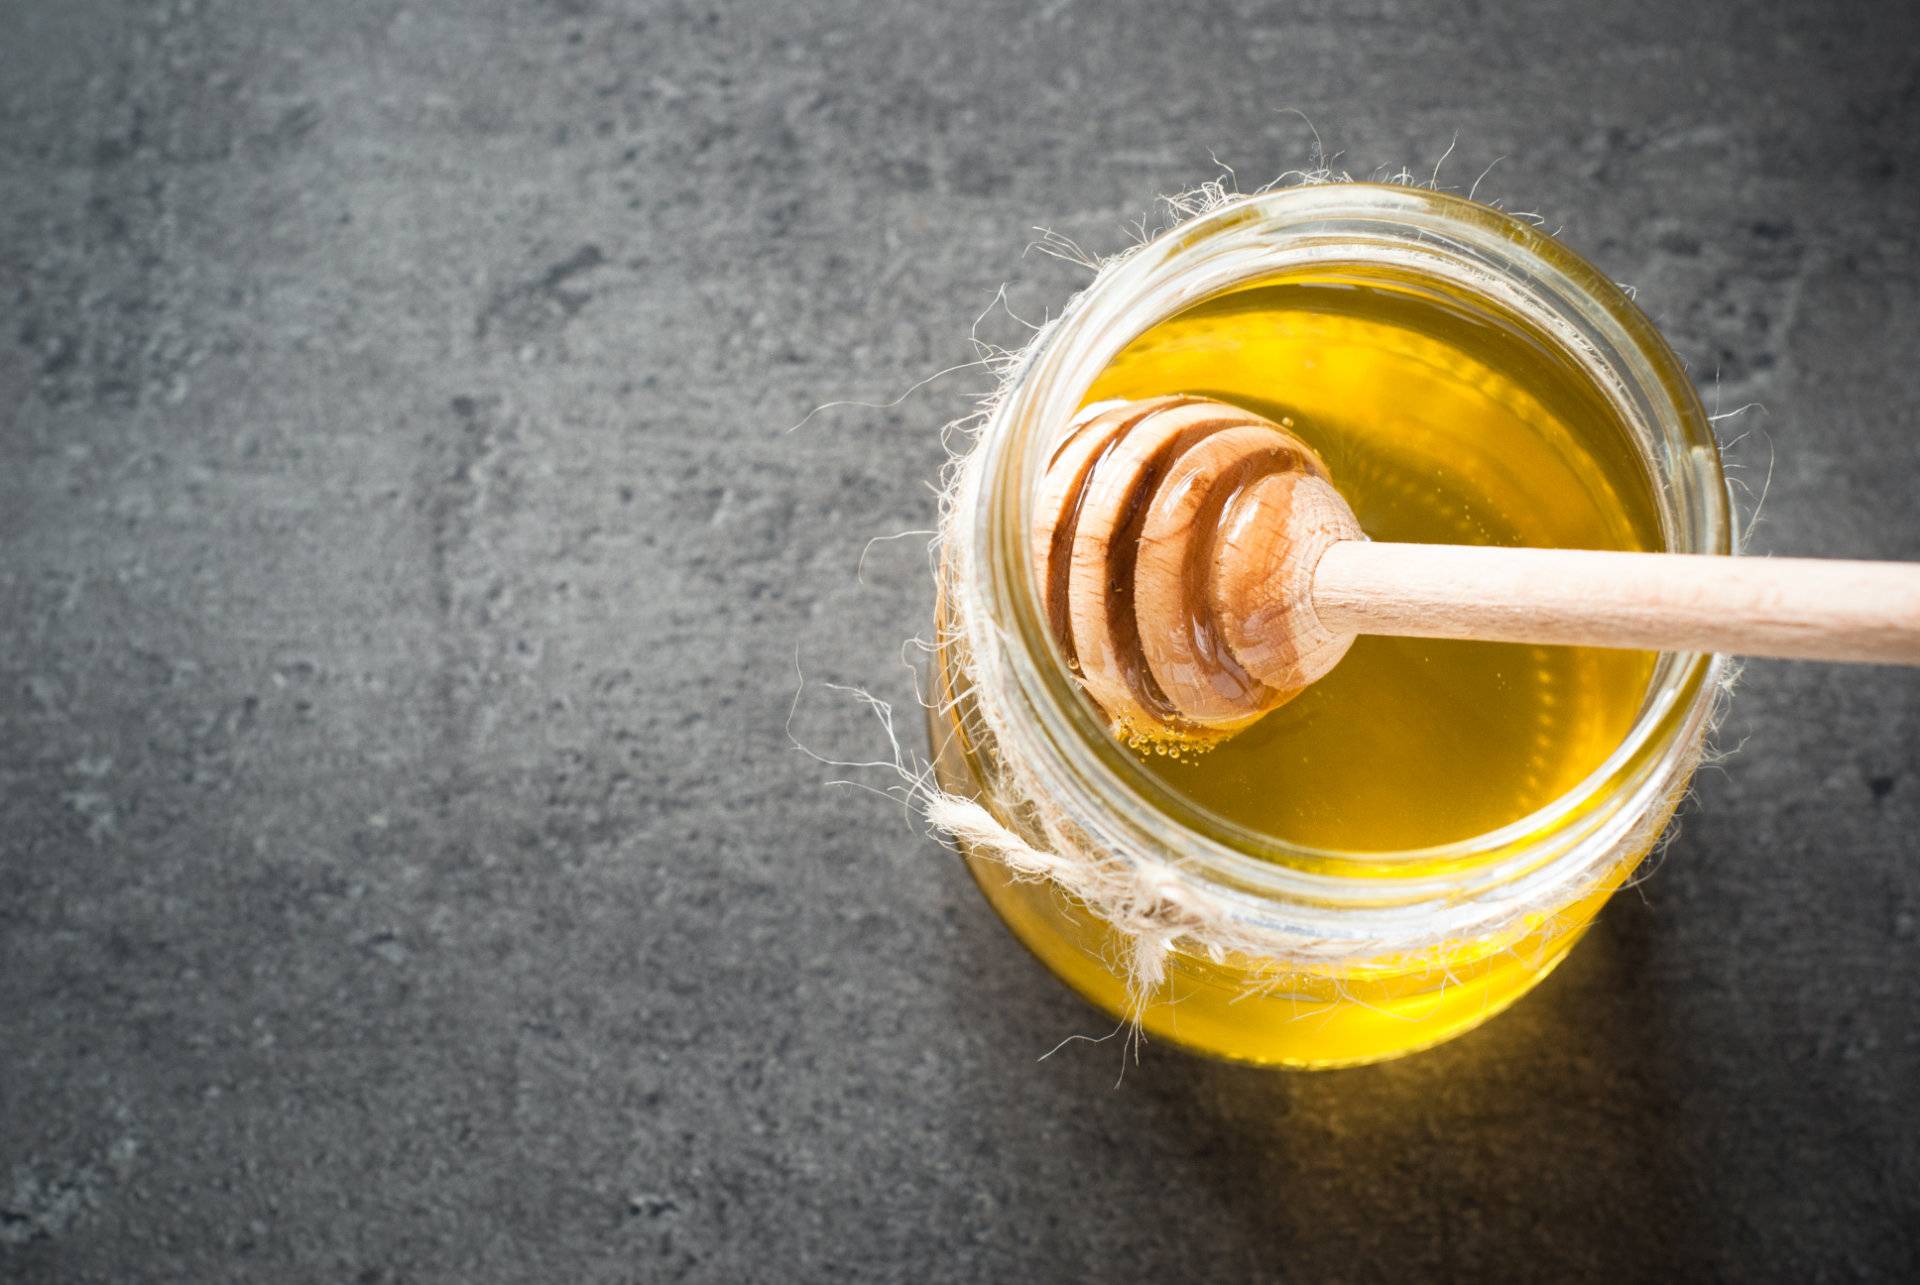 La Cupeta è un dolce tipo della Valtellina a base di miele prodotto naturalmente in questa terra